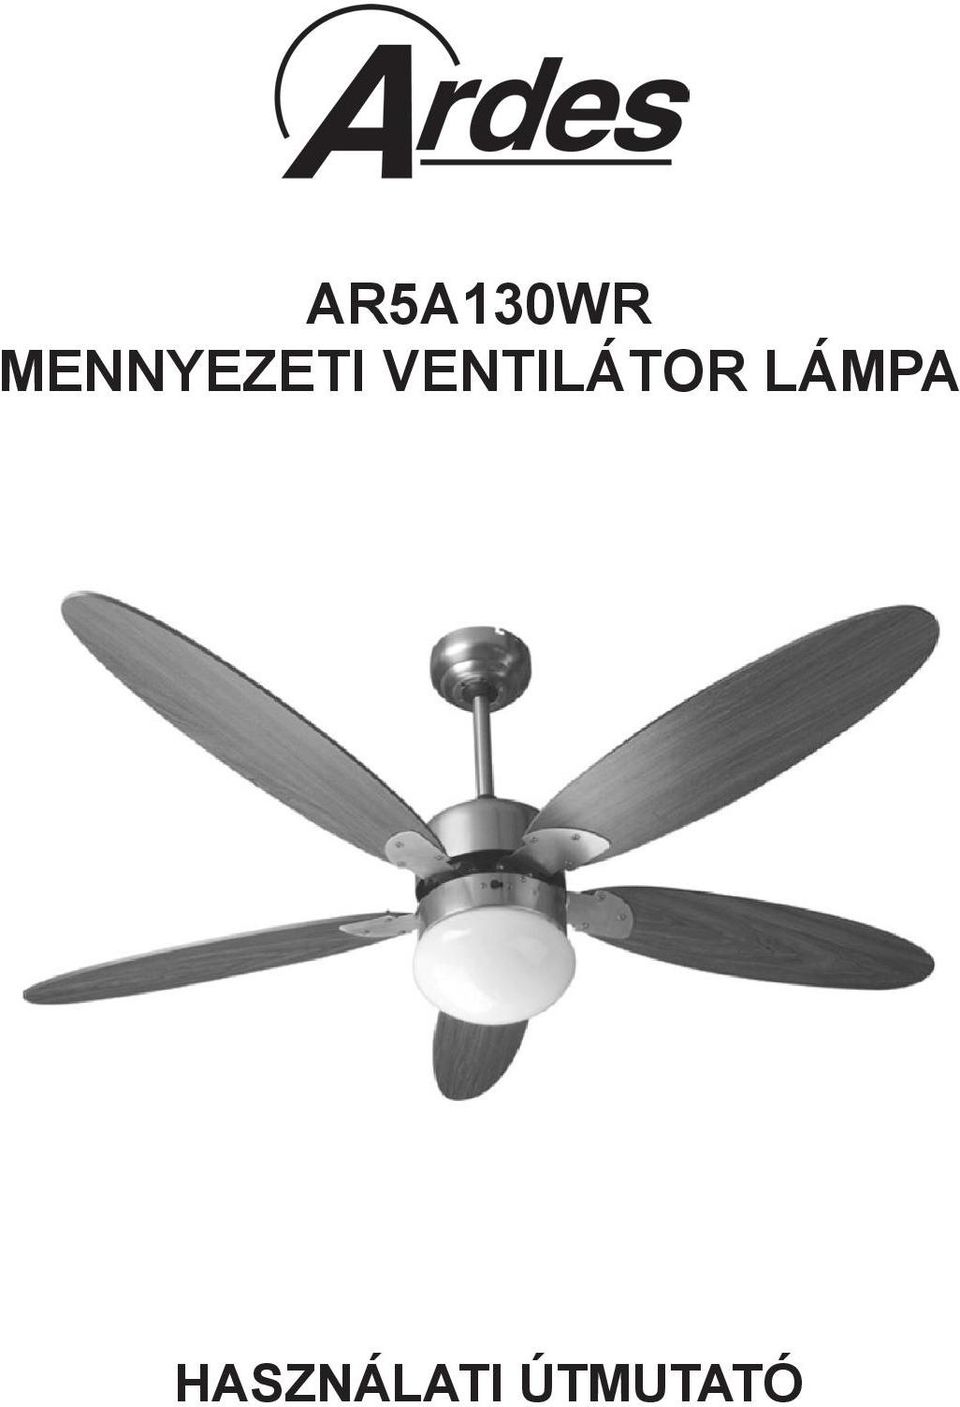 AR5A130WR mennyezeti ventilátor lámpa - PDF Ingyenes letöltés